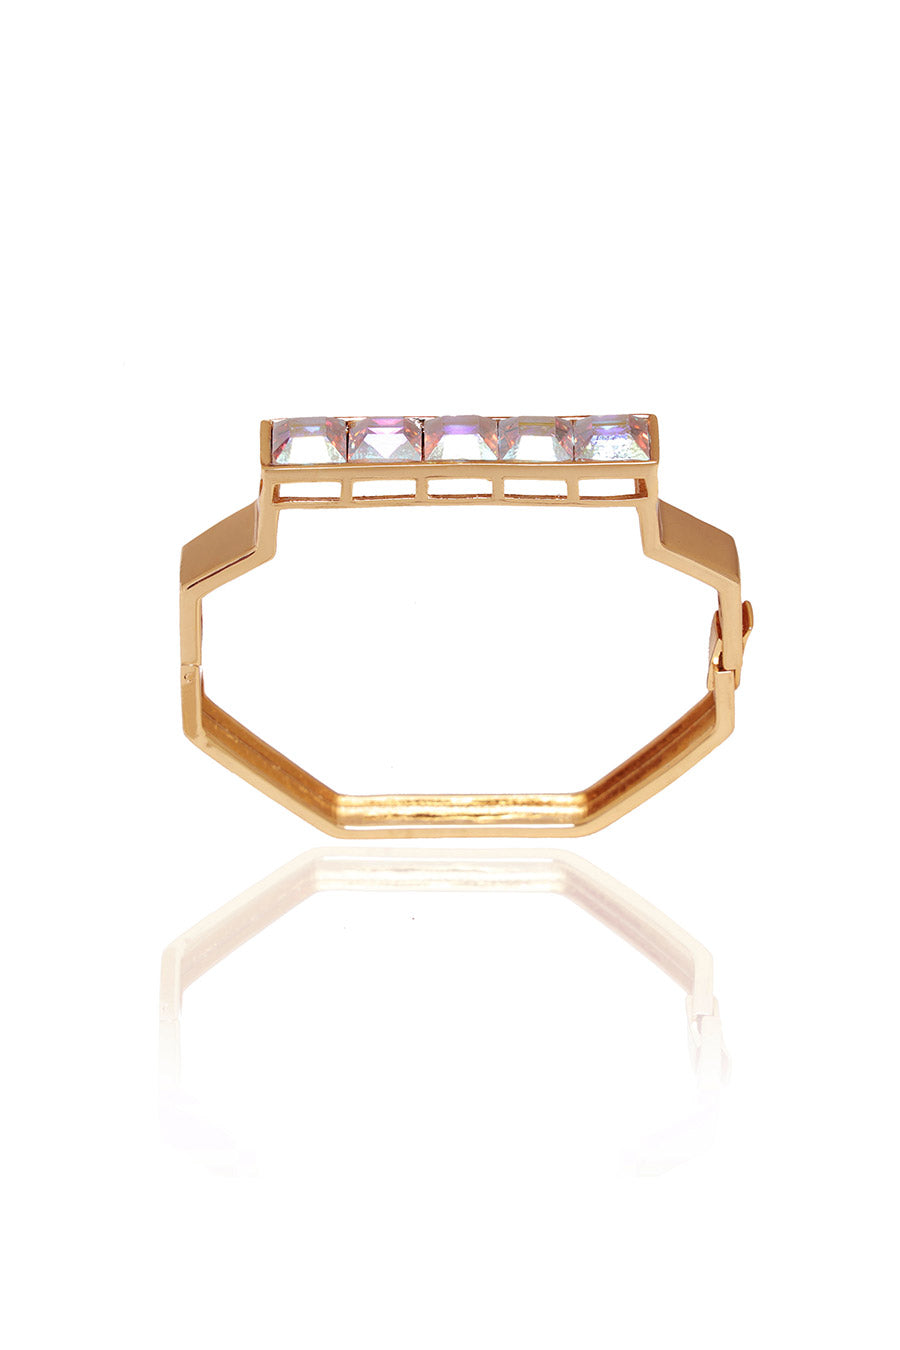 Golden Tan - Reflective Swarovski Kada Bracelet